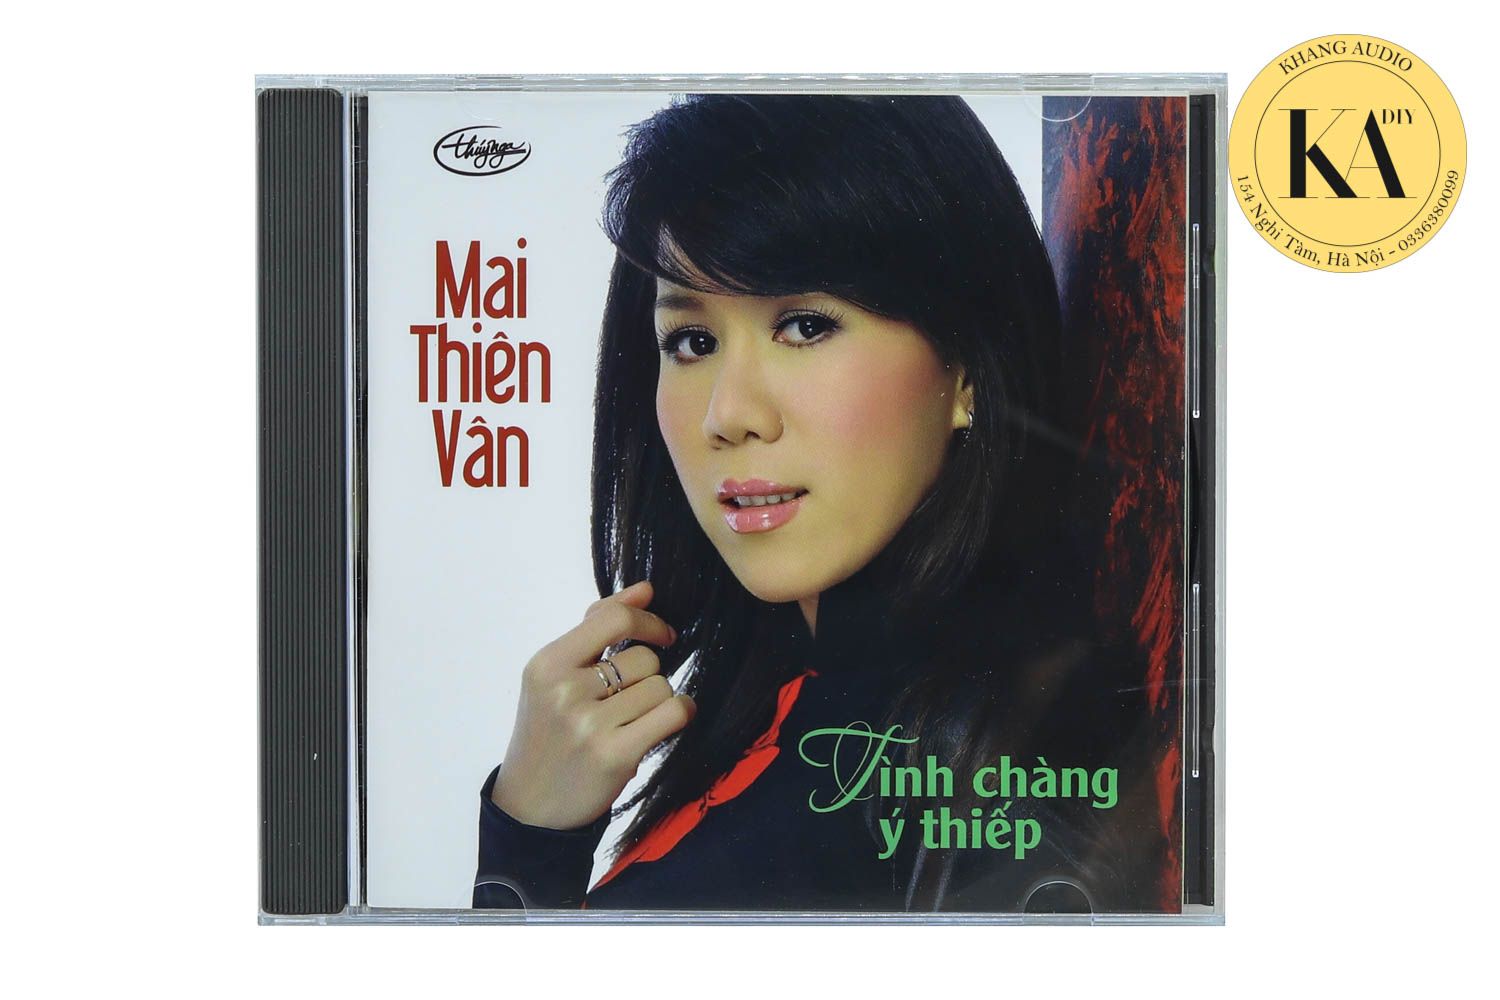 Tình Chàng Ý Thiếp - Mai Thiên Vân Khang Audio 0336380099